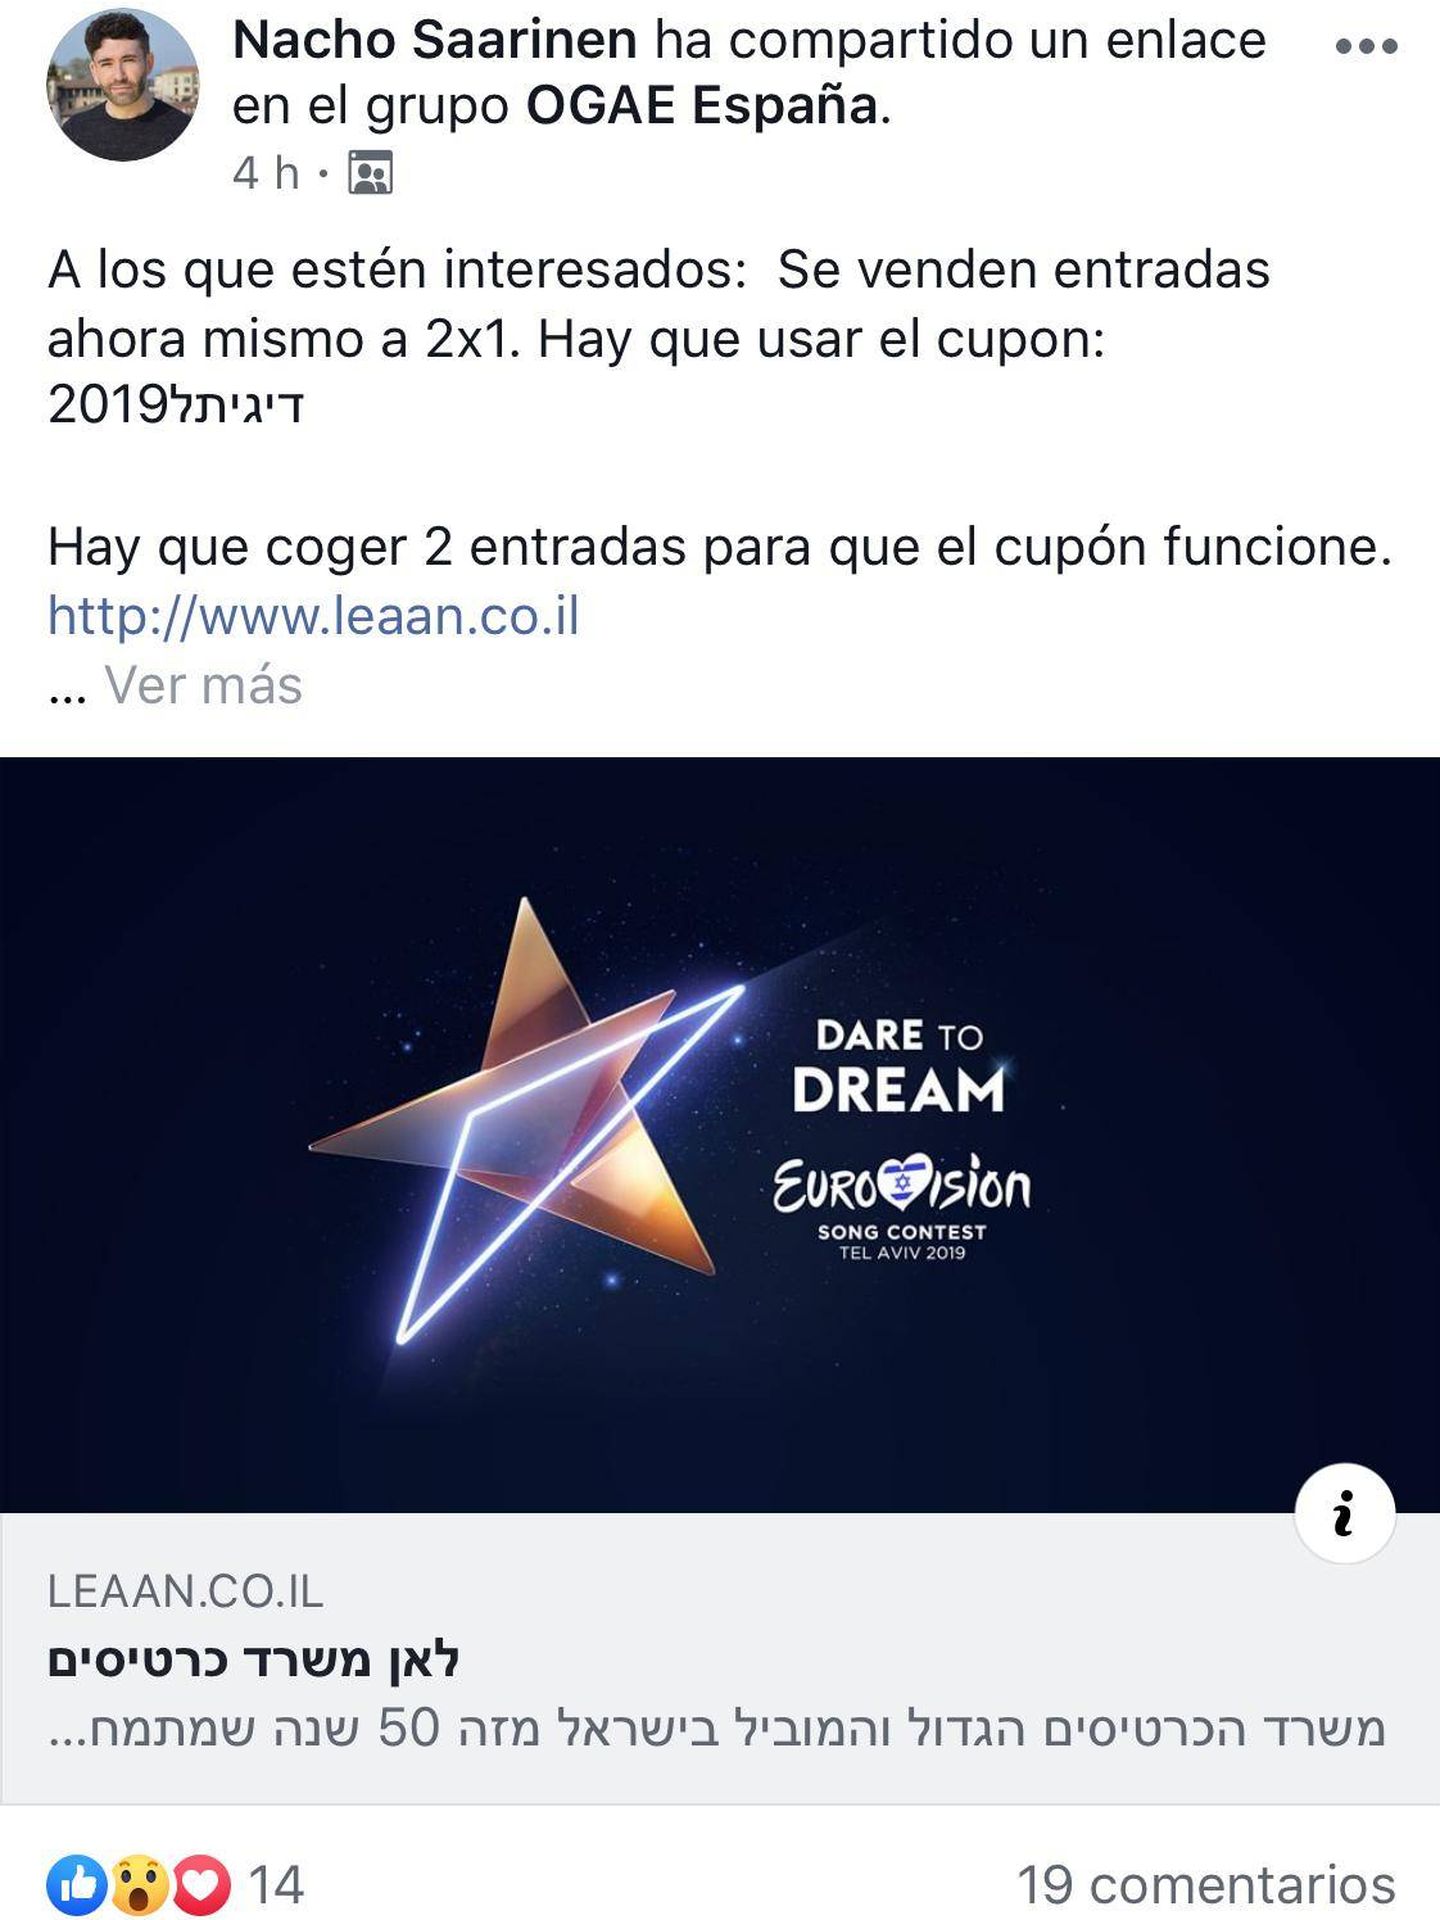 Oferta de Eurovisión. (Facebook).